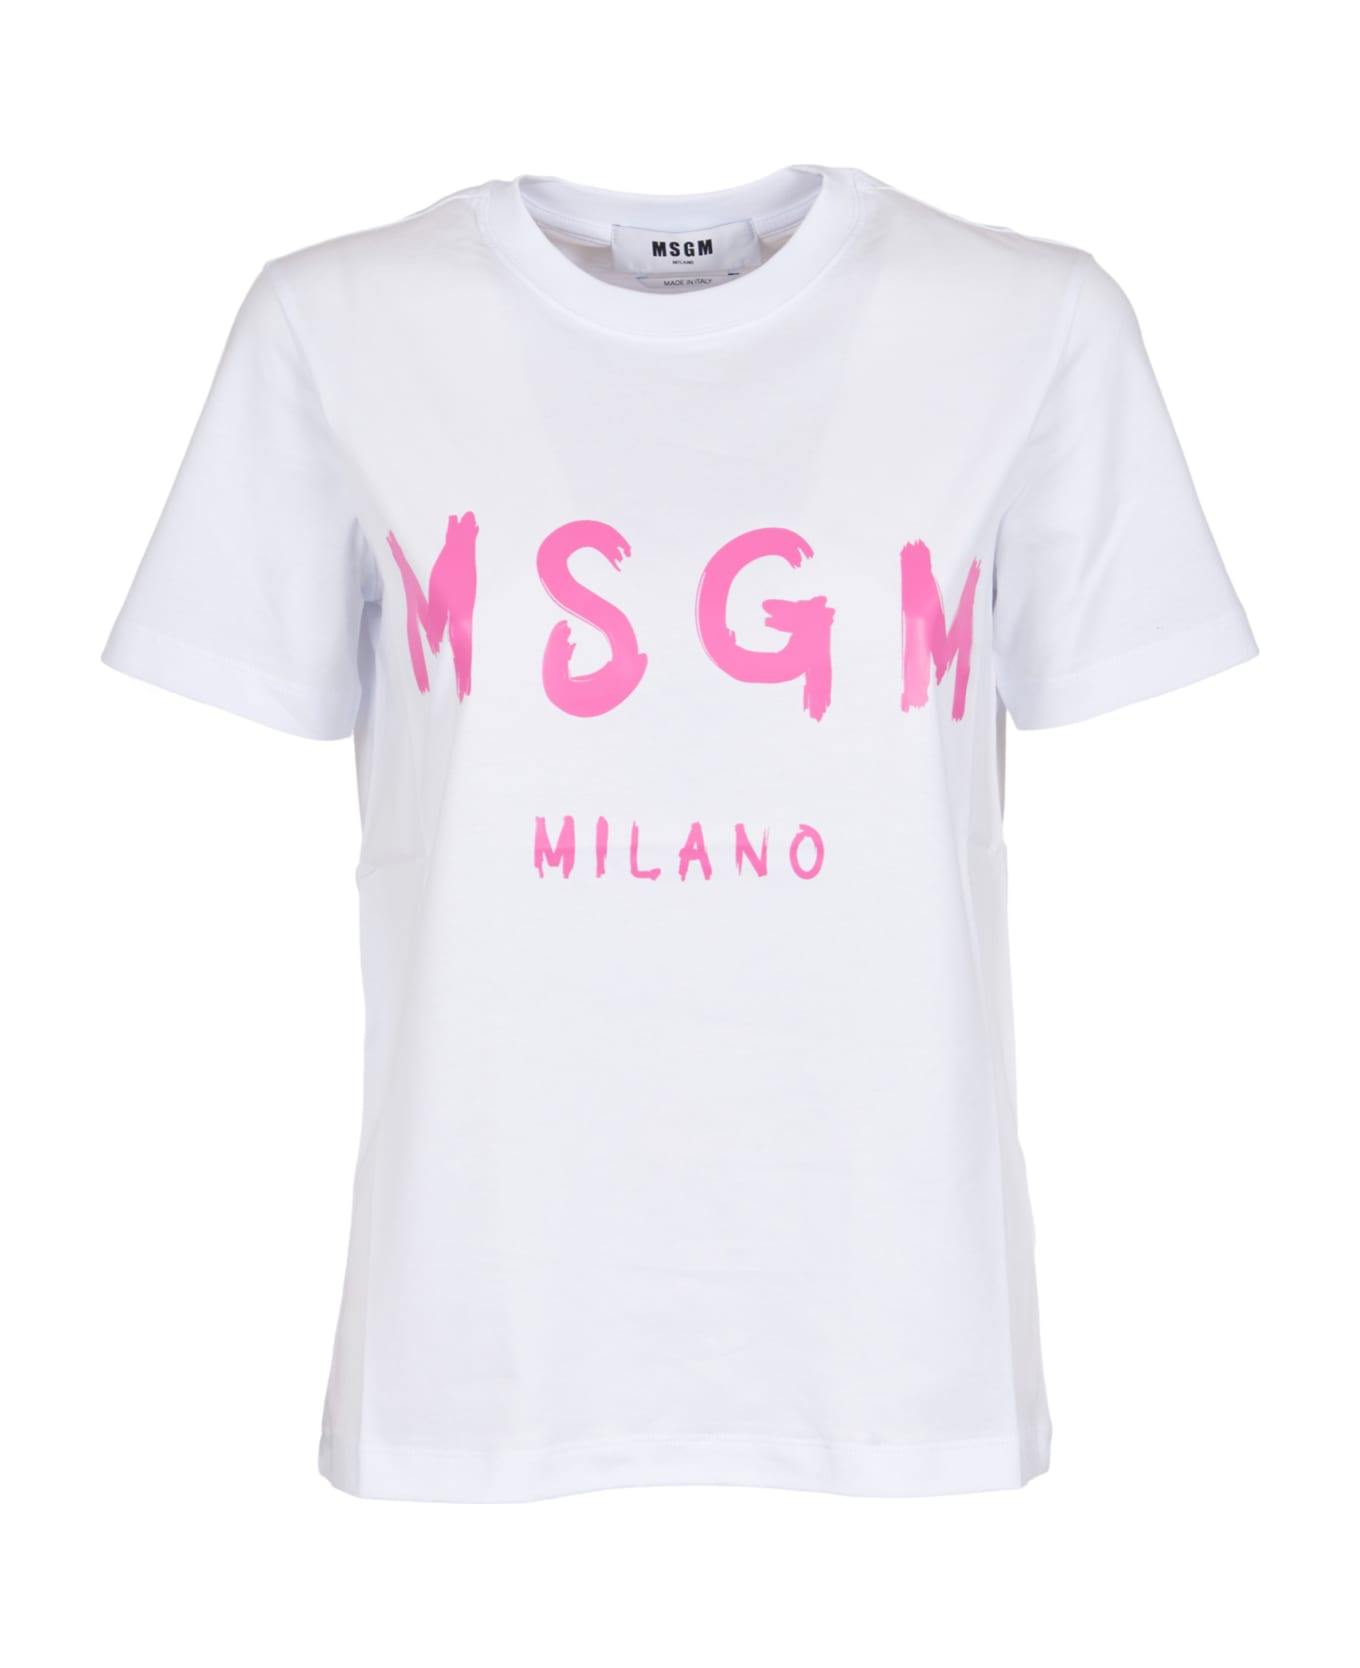 MSGM Milano T-shirt - Optical White